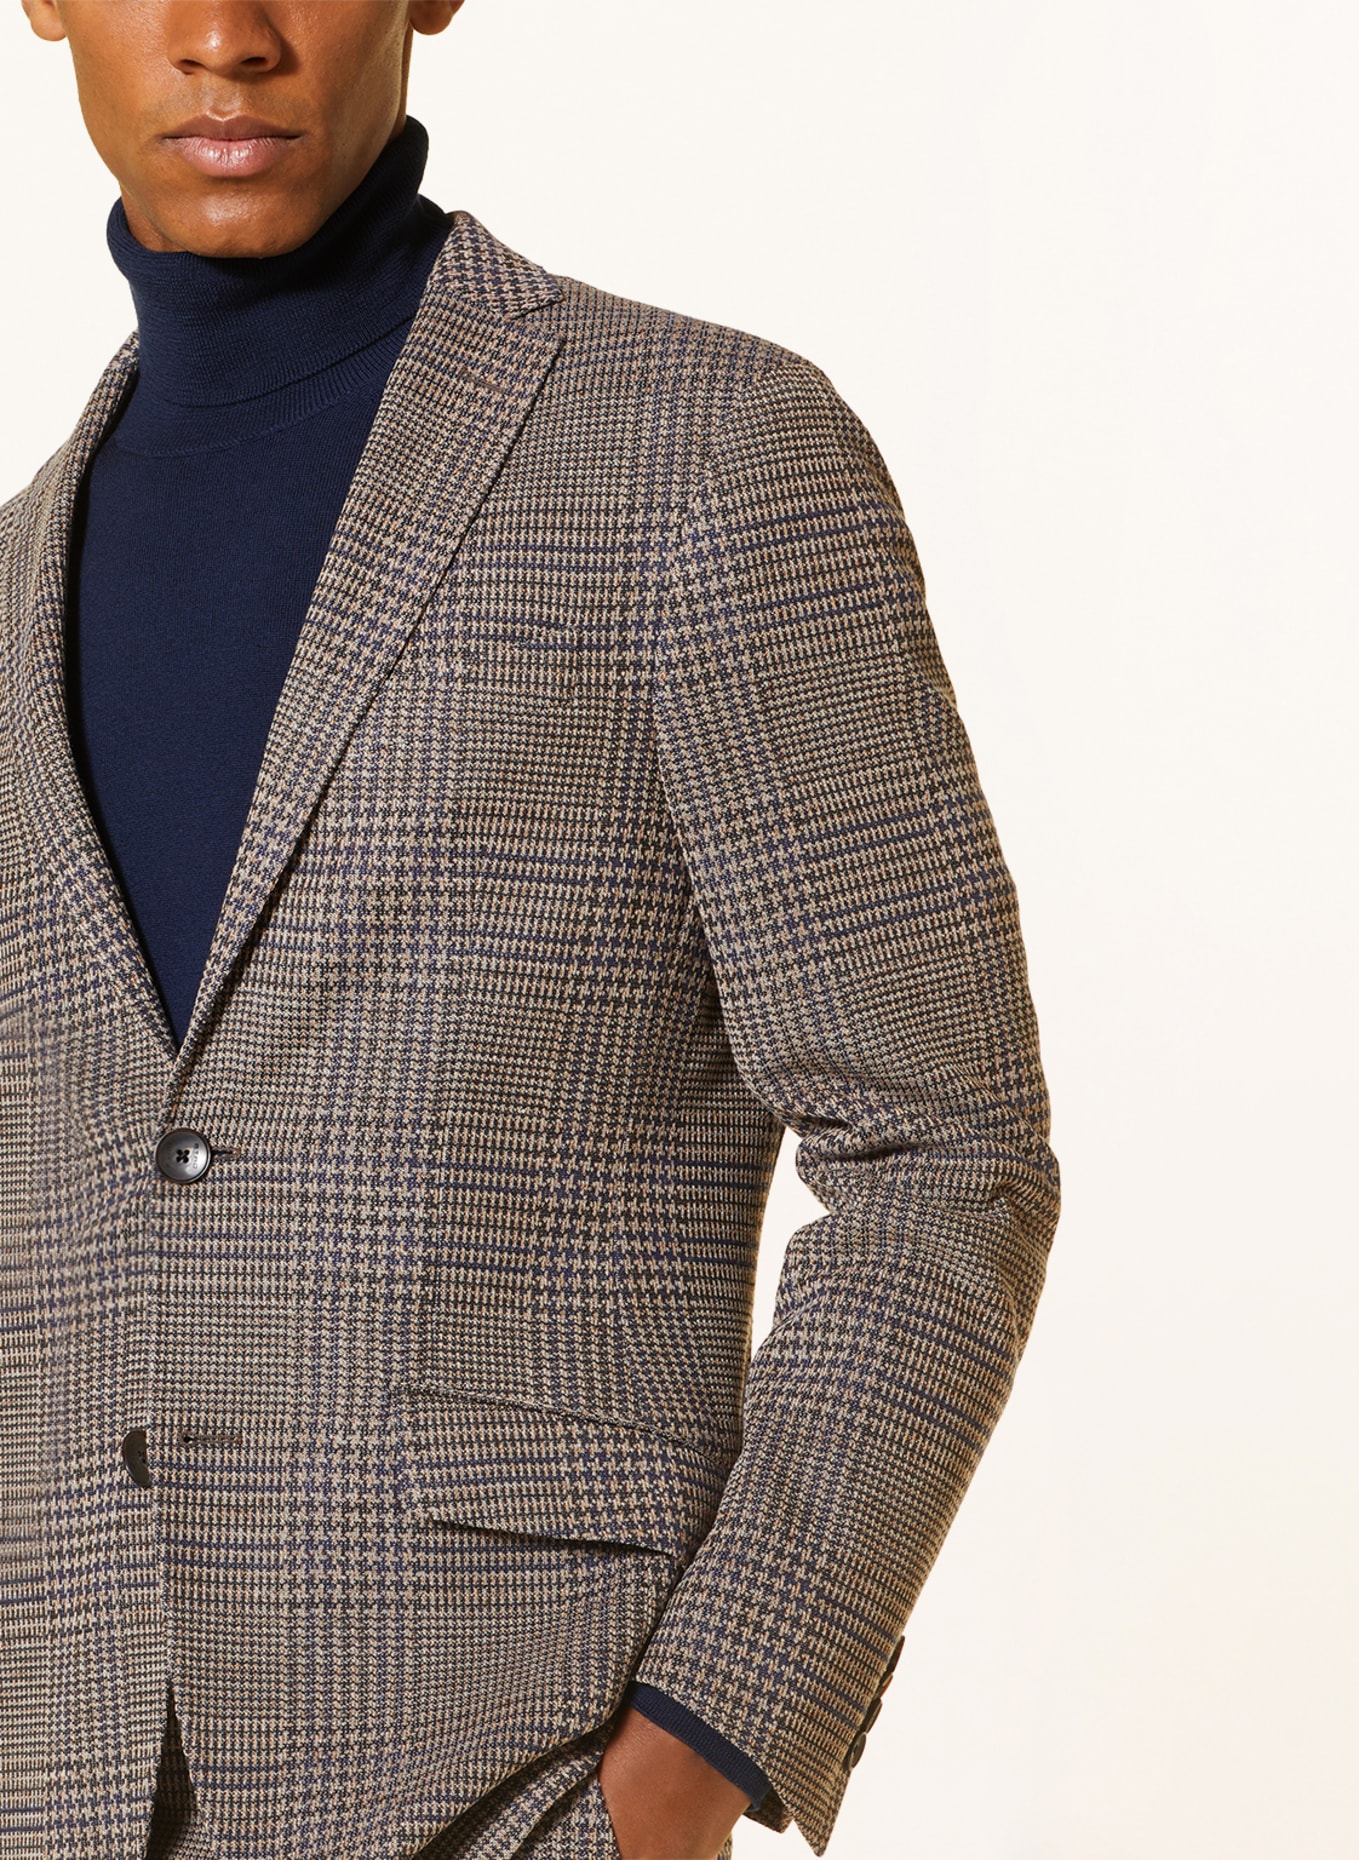 ETRO Tailored jacket regular fit, Color: BEIGE/ DARK BLUE (Image 5)